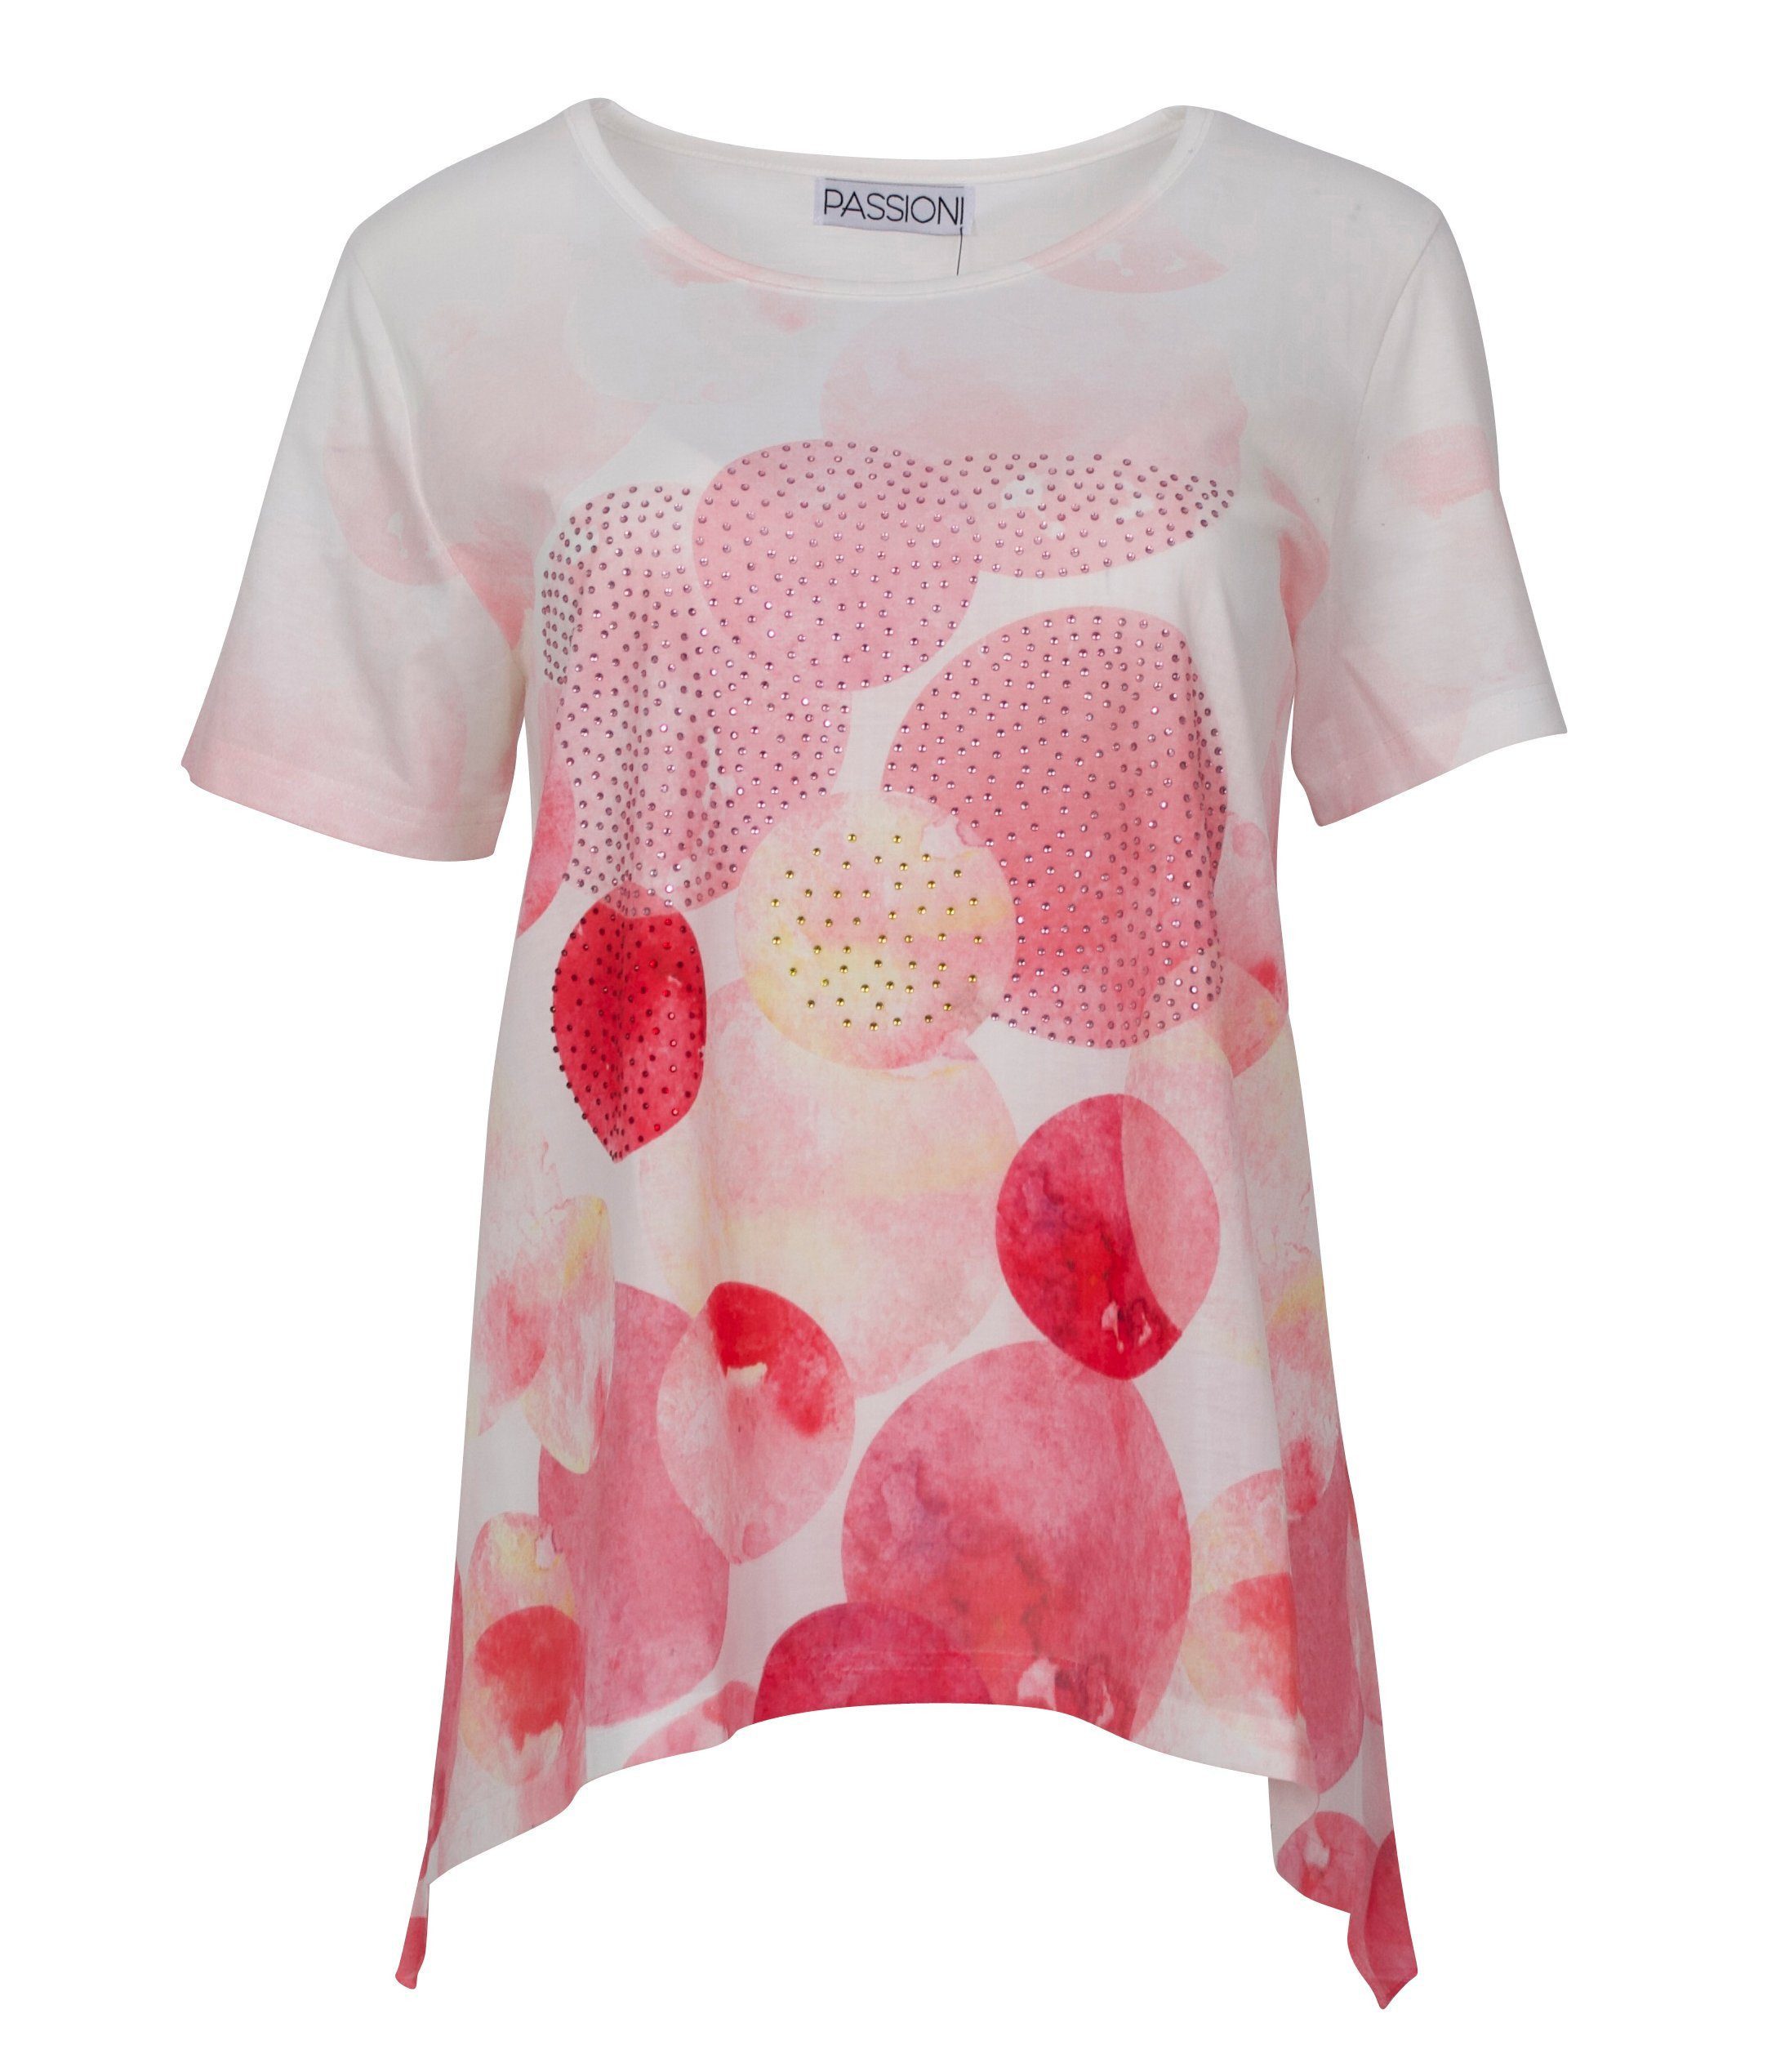 Passioni T-Shirt in Rosa mit Strasssteinen und Muster